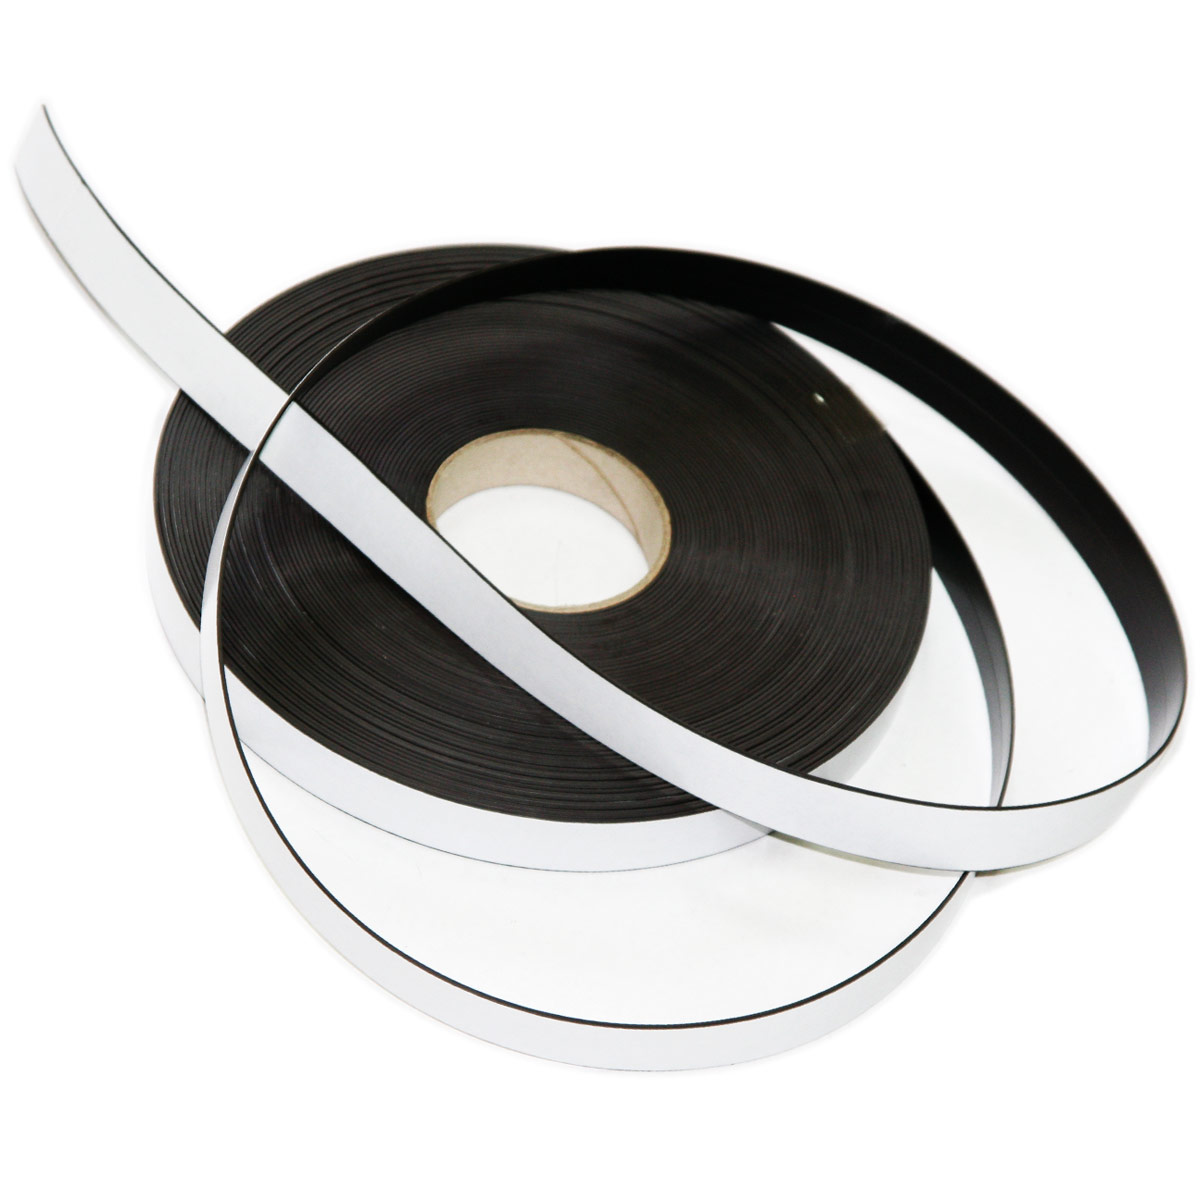 Self-adhesive magnetic tape